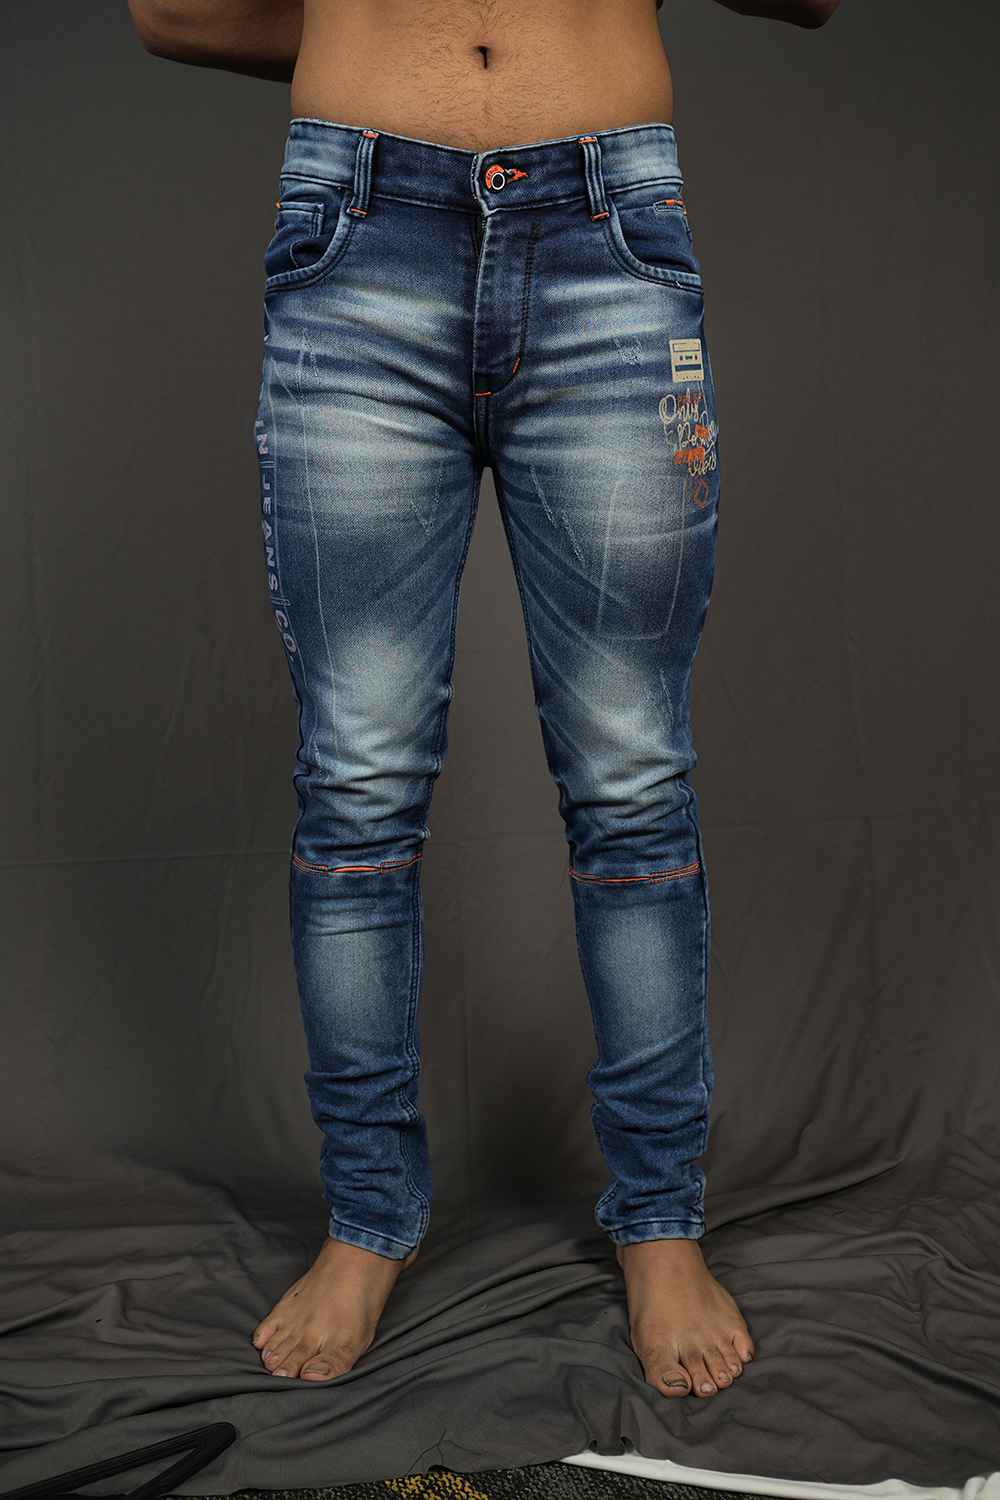 Dark Blue Jeans Images